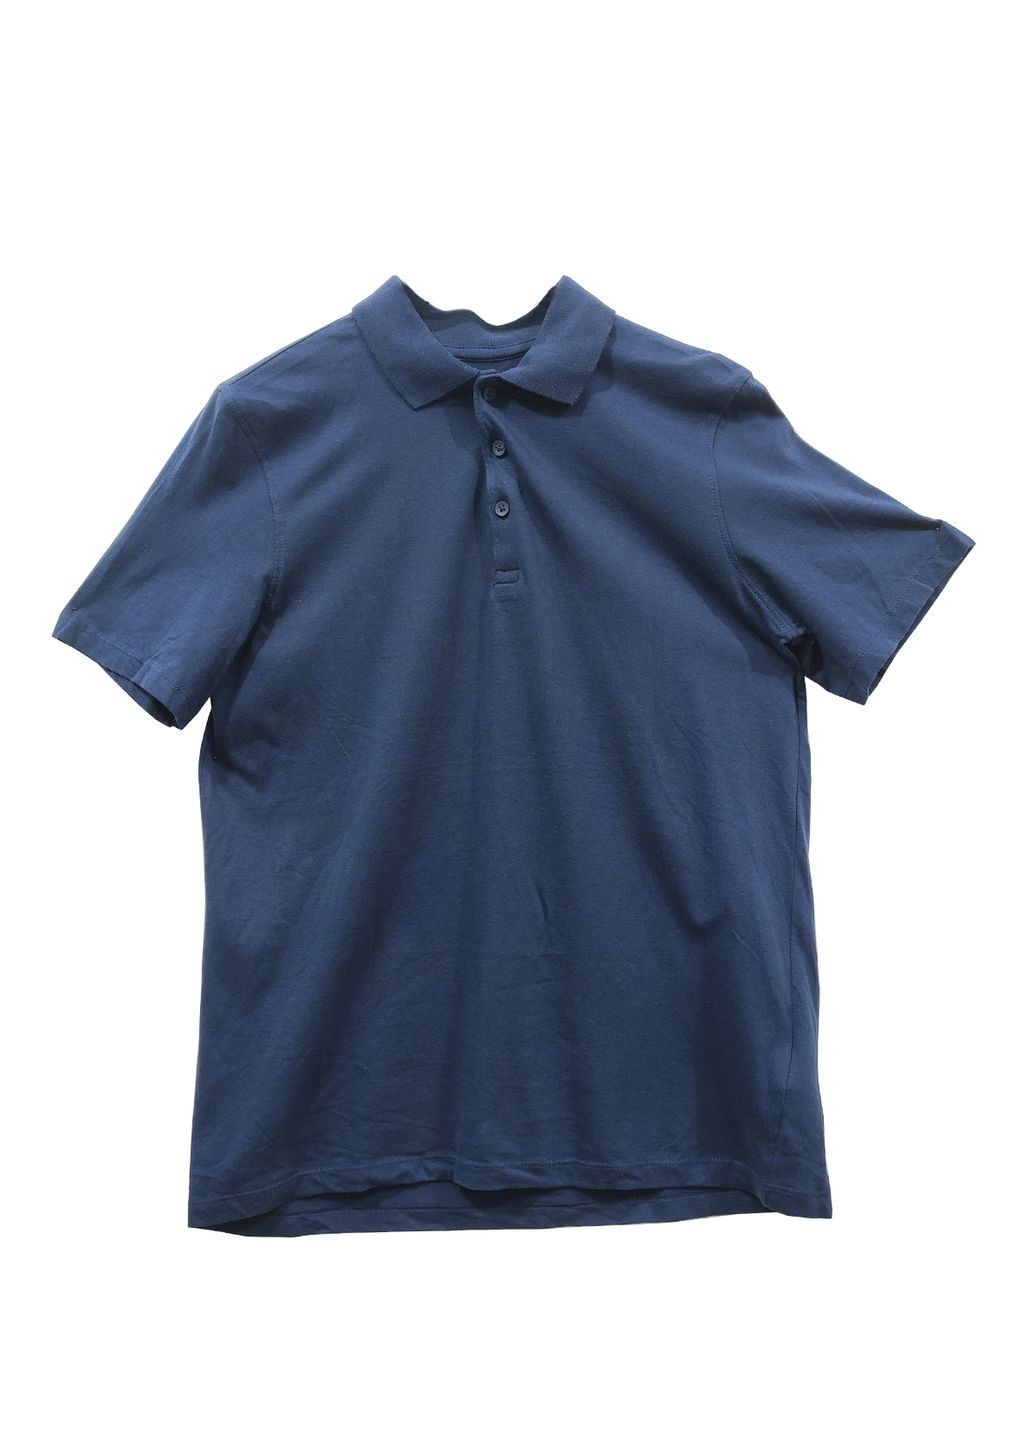 Синяя детская футболка-поло для мальчика H&M